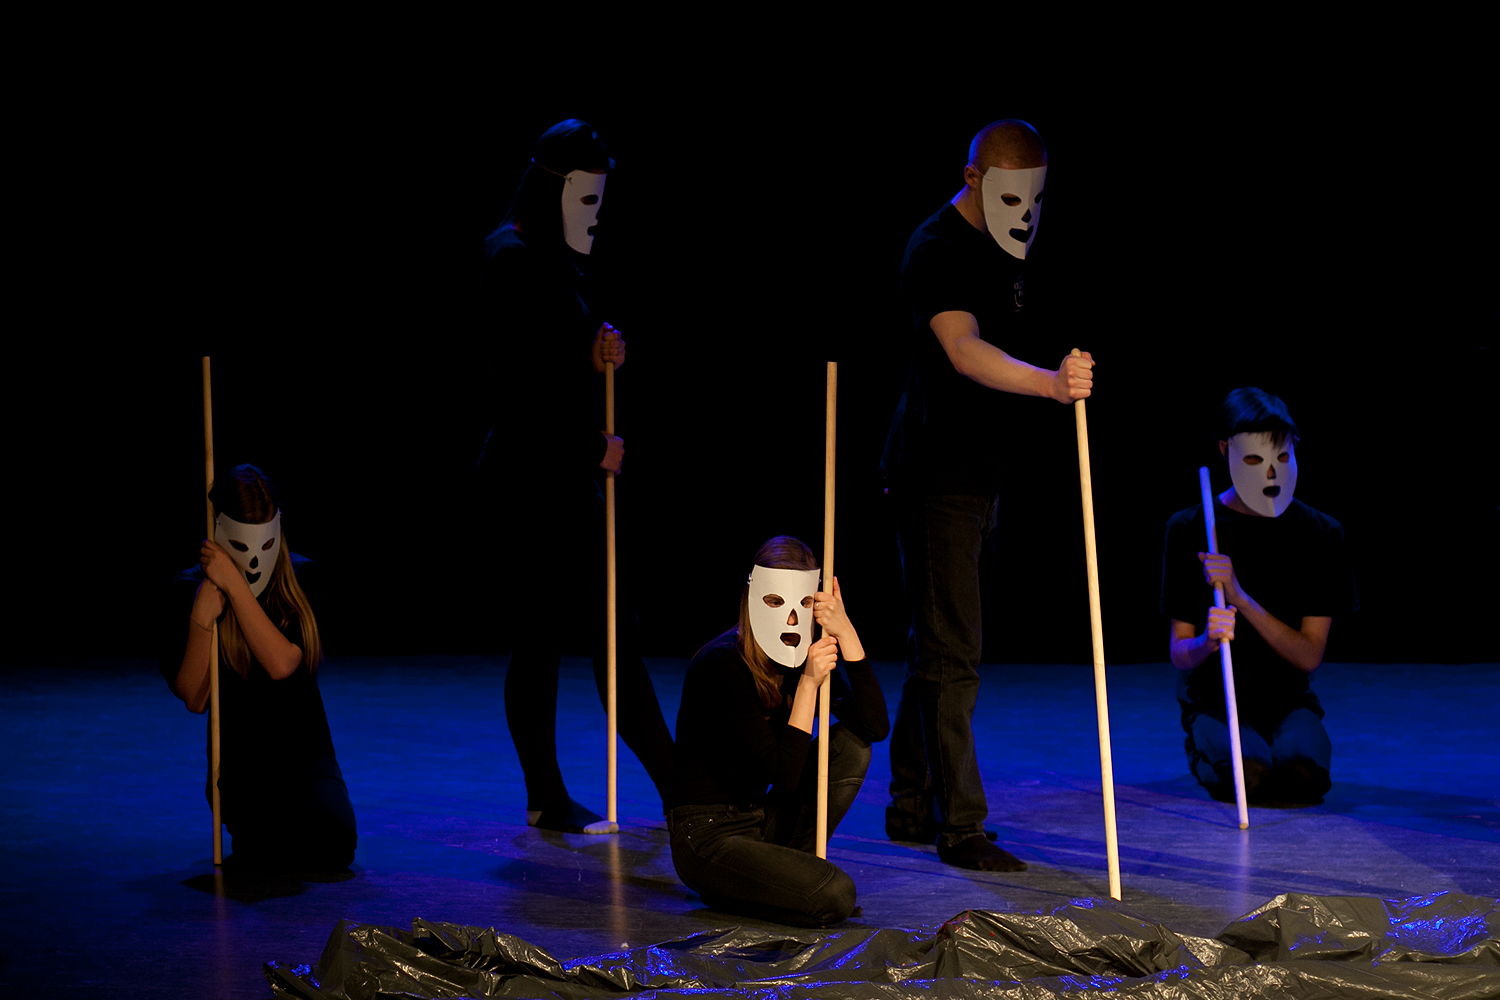 XIX Oglnopolski Festiwal Teatru, Piosenki, Taca, Kwiecie Plecie 2014, dzie Teatru 11.04.2014 r.